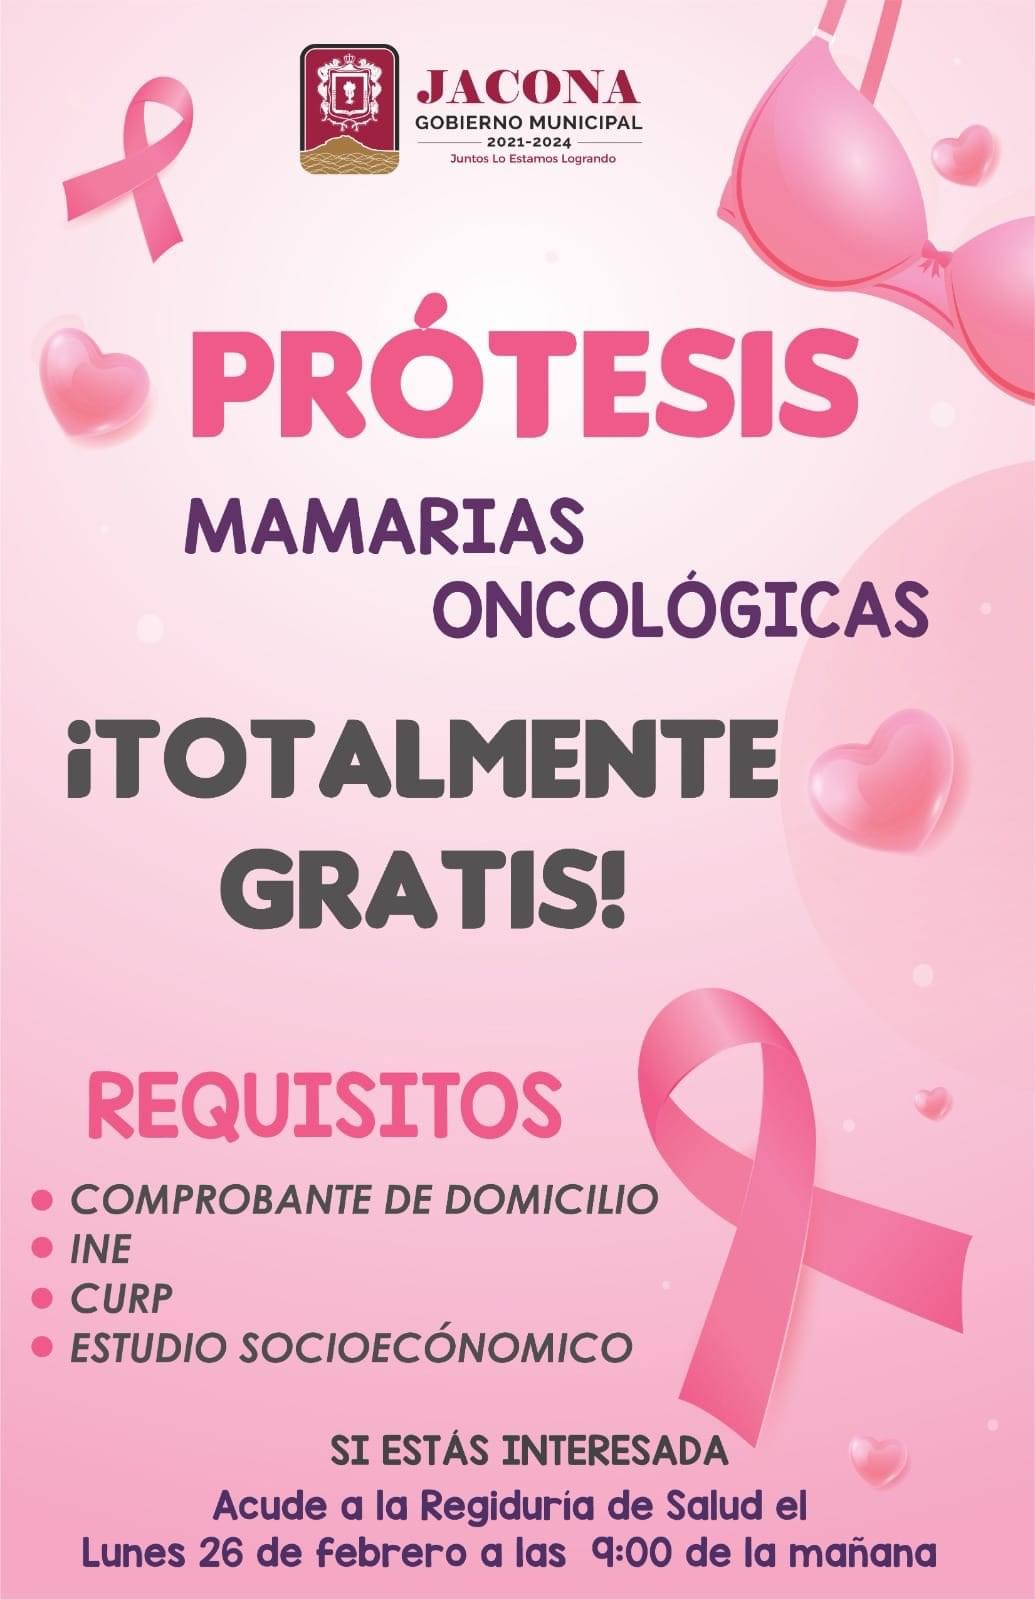 Apoyarán en Jacona con prótesis mamaria o brasier oncologico a mujeres con cáncer